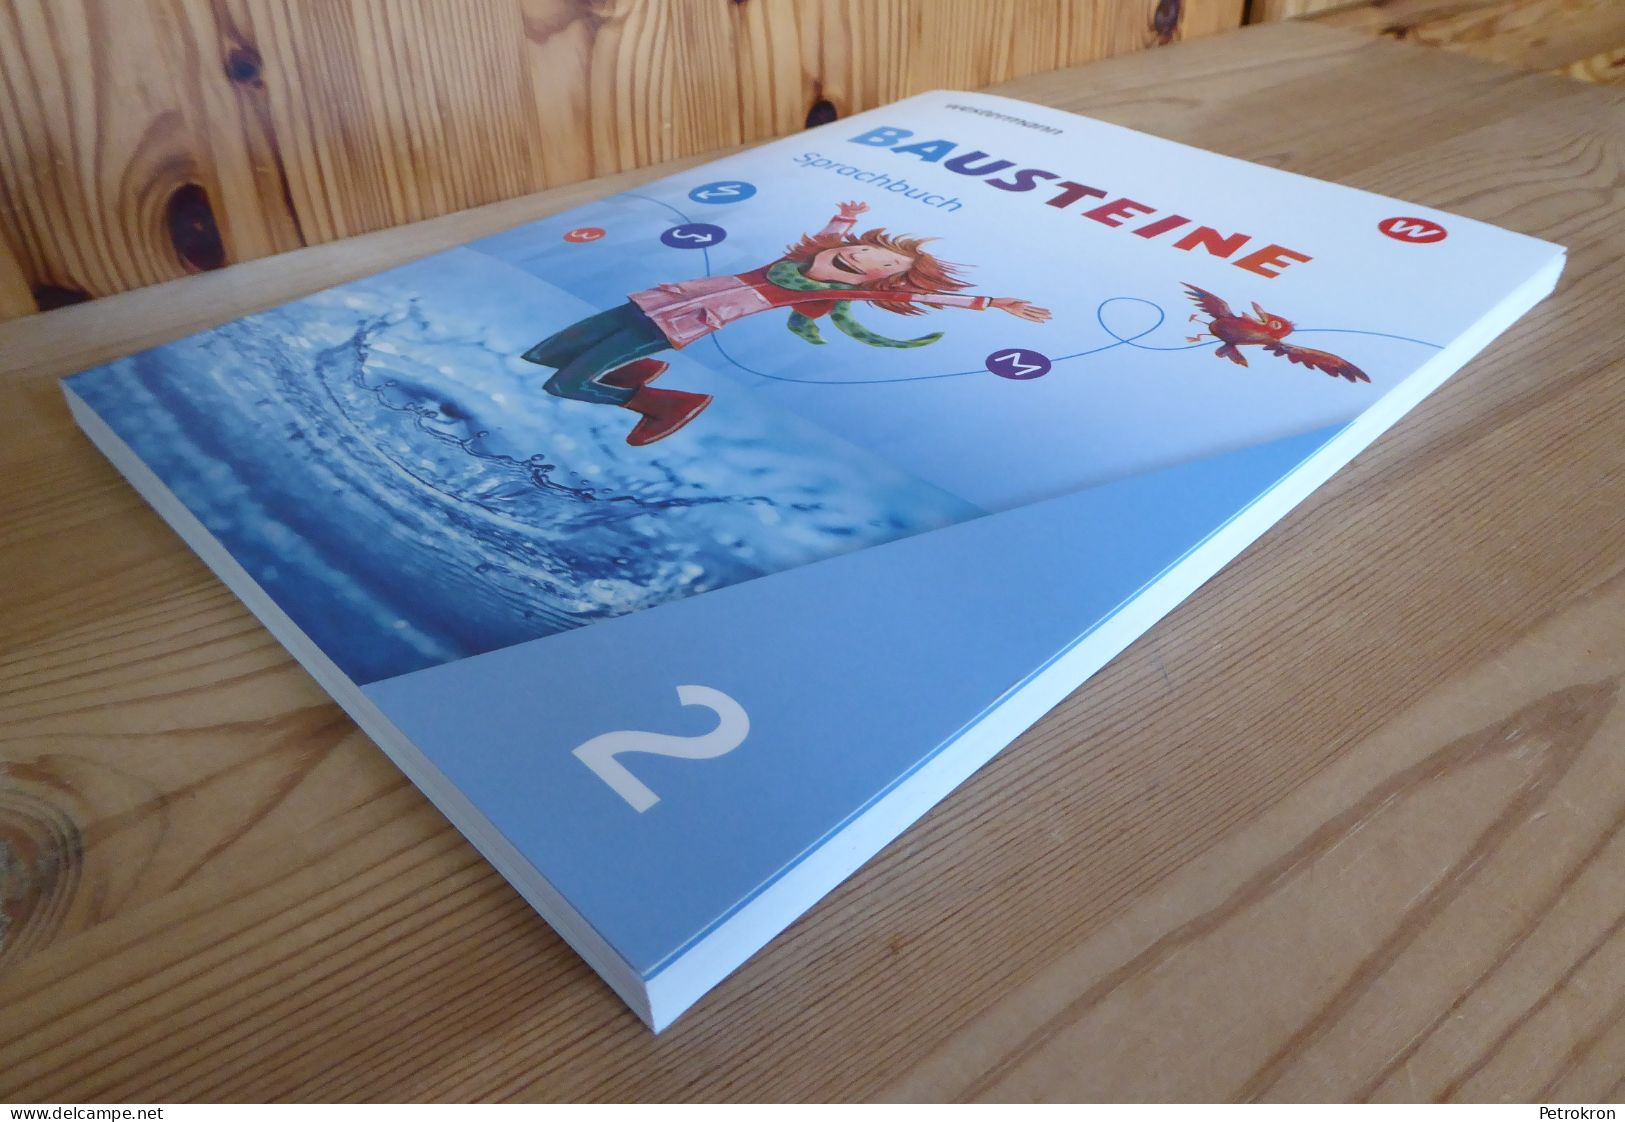 Westermann Bausteine Sprachbuch Klasse 2 Grundschule Deutsch 2020 Mit Beiheft - Libri Scolastici